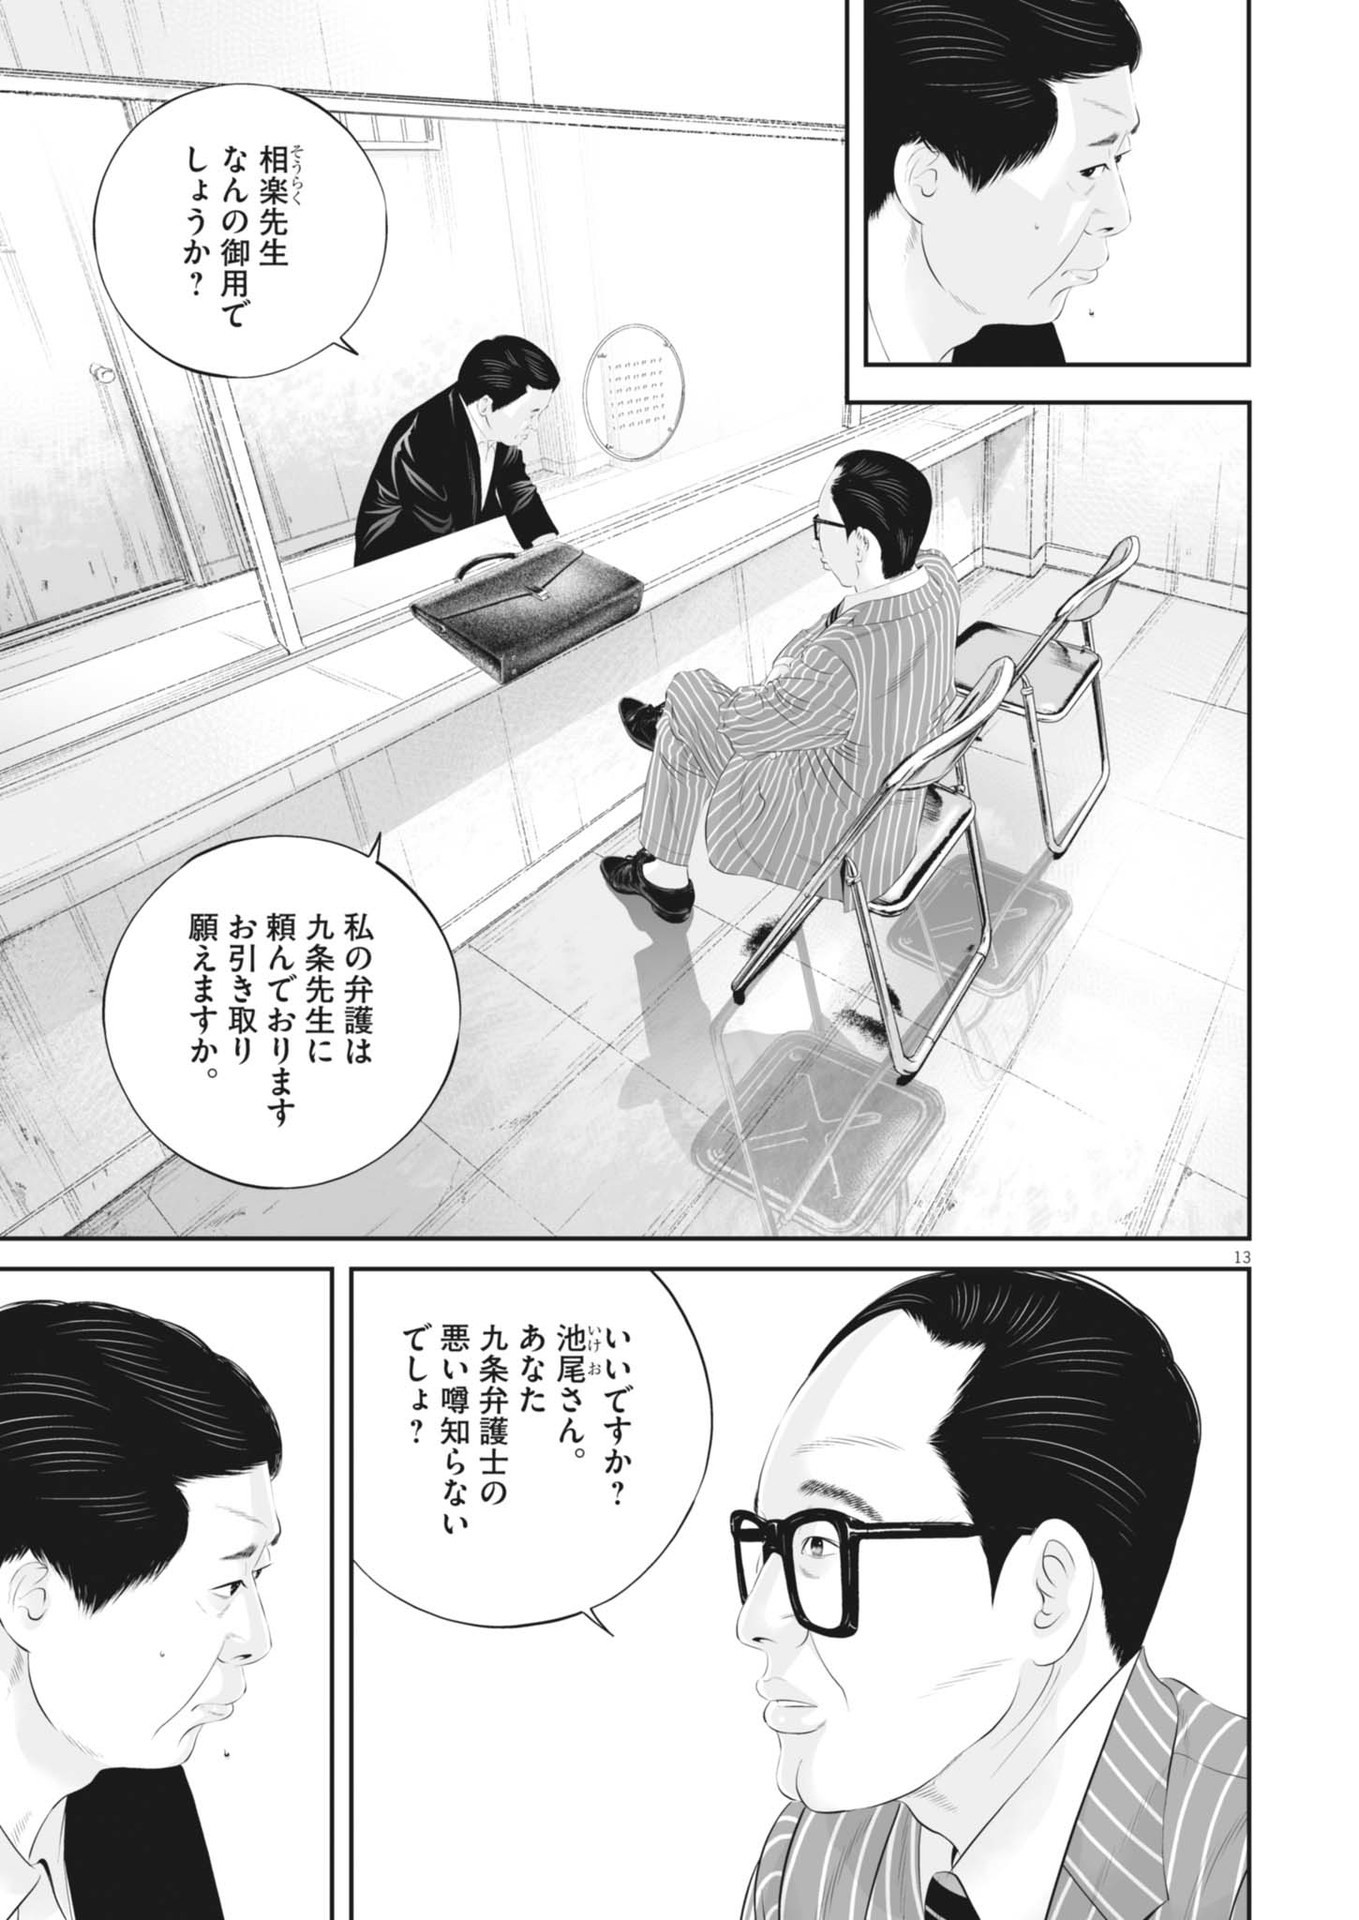 Kujou no Taizai - Chapter 105 - Page 13